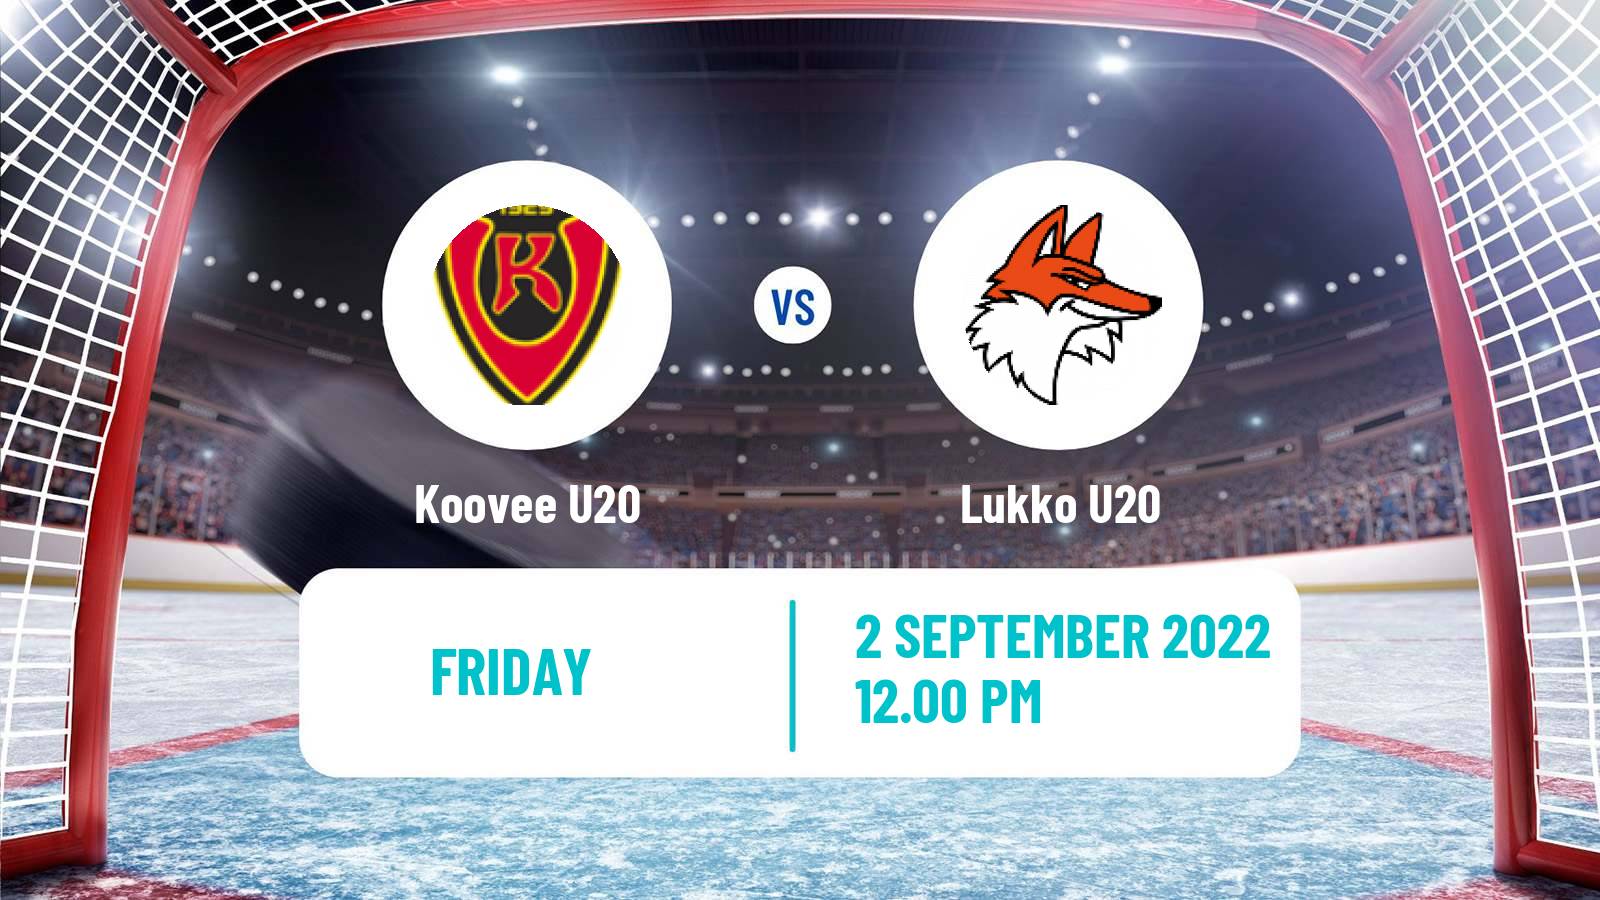 Hockey Finnish SM-sarja U20 Koovee U20 - Lukko U20